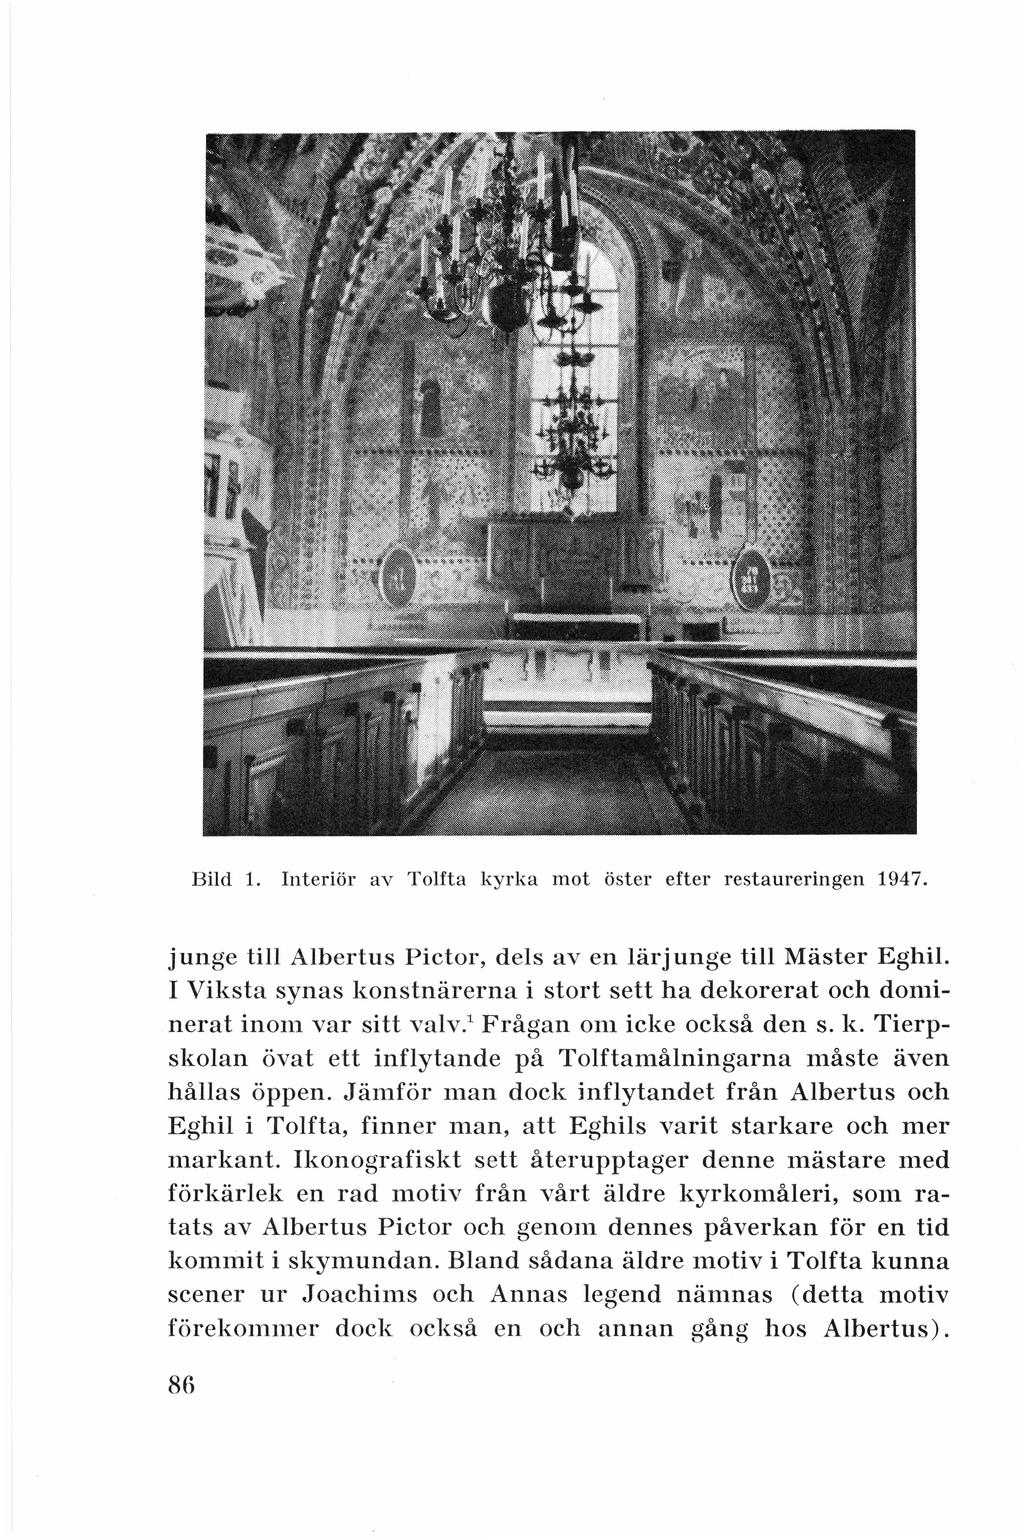 Bild 1. Interiör av Tolfta kyrka mot öster efter restaureringen 1947. j unge till Albertus Pictor, d els av en lärjunge till Mäster Eghil.